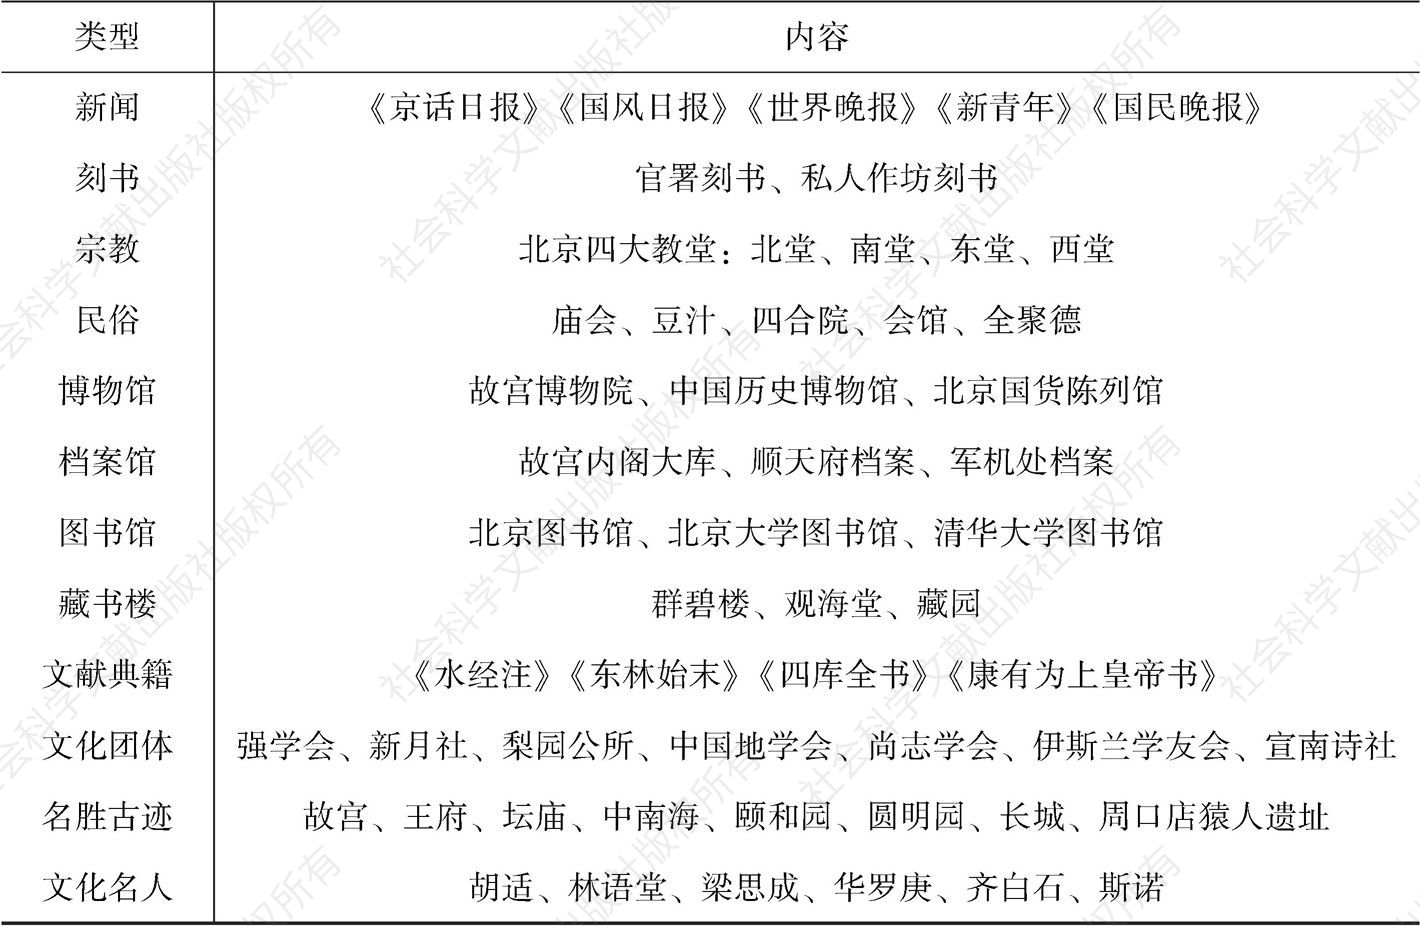 表1 北京文化资源（远古至1949年）-续表